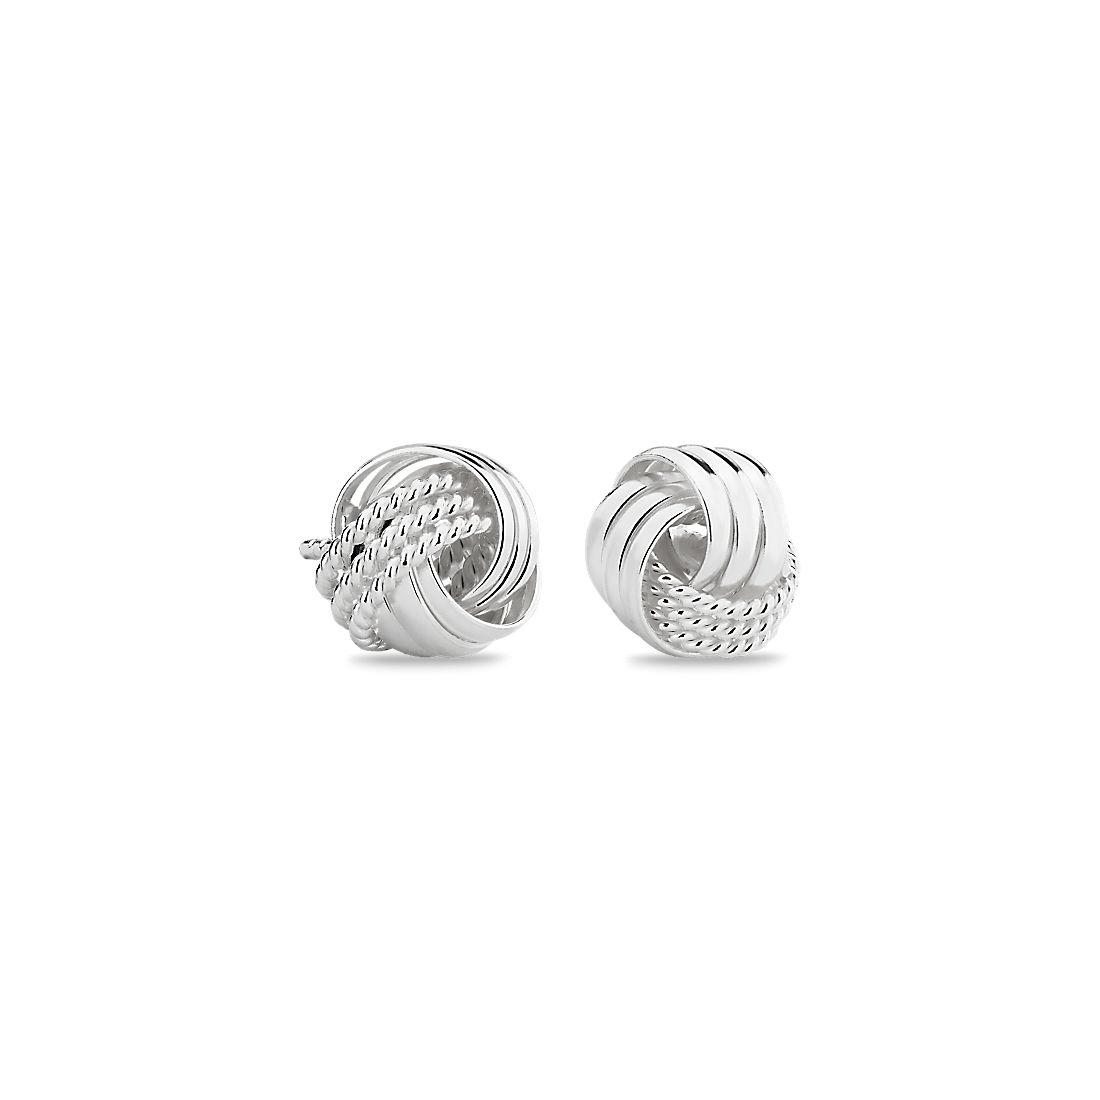 Interlaced Love Knot Earrings in Italian Sterling Silver